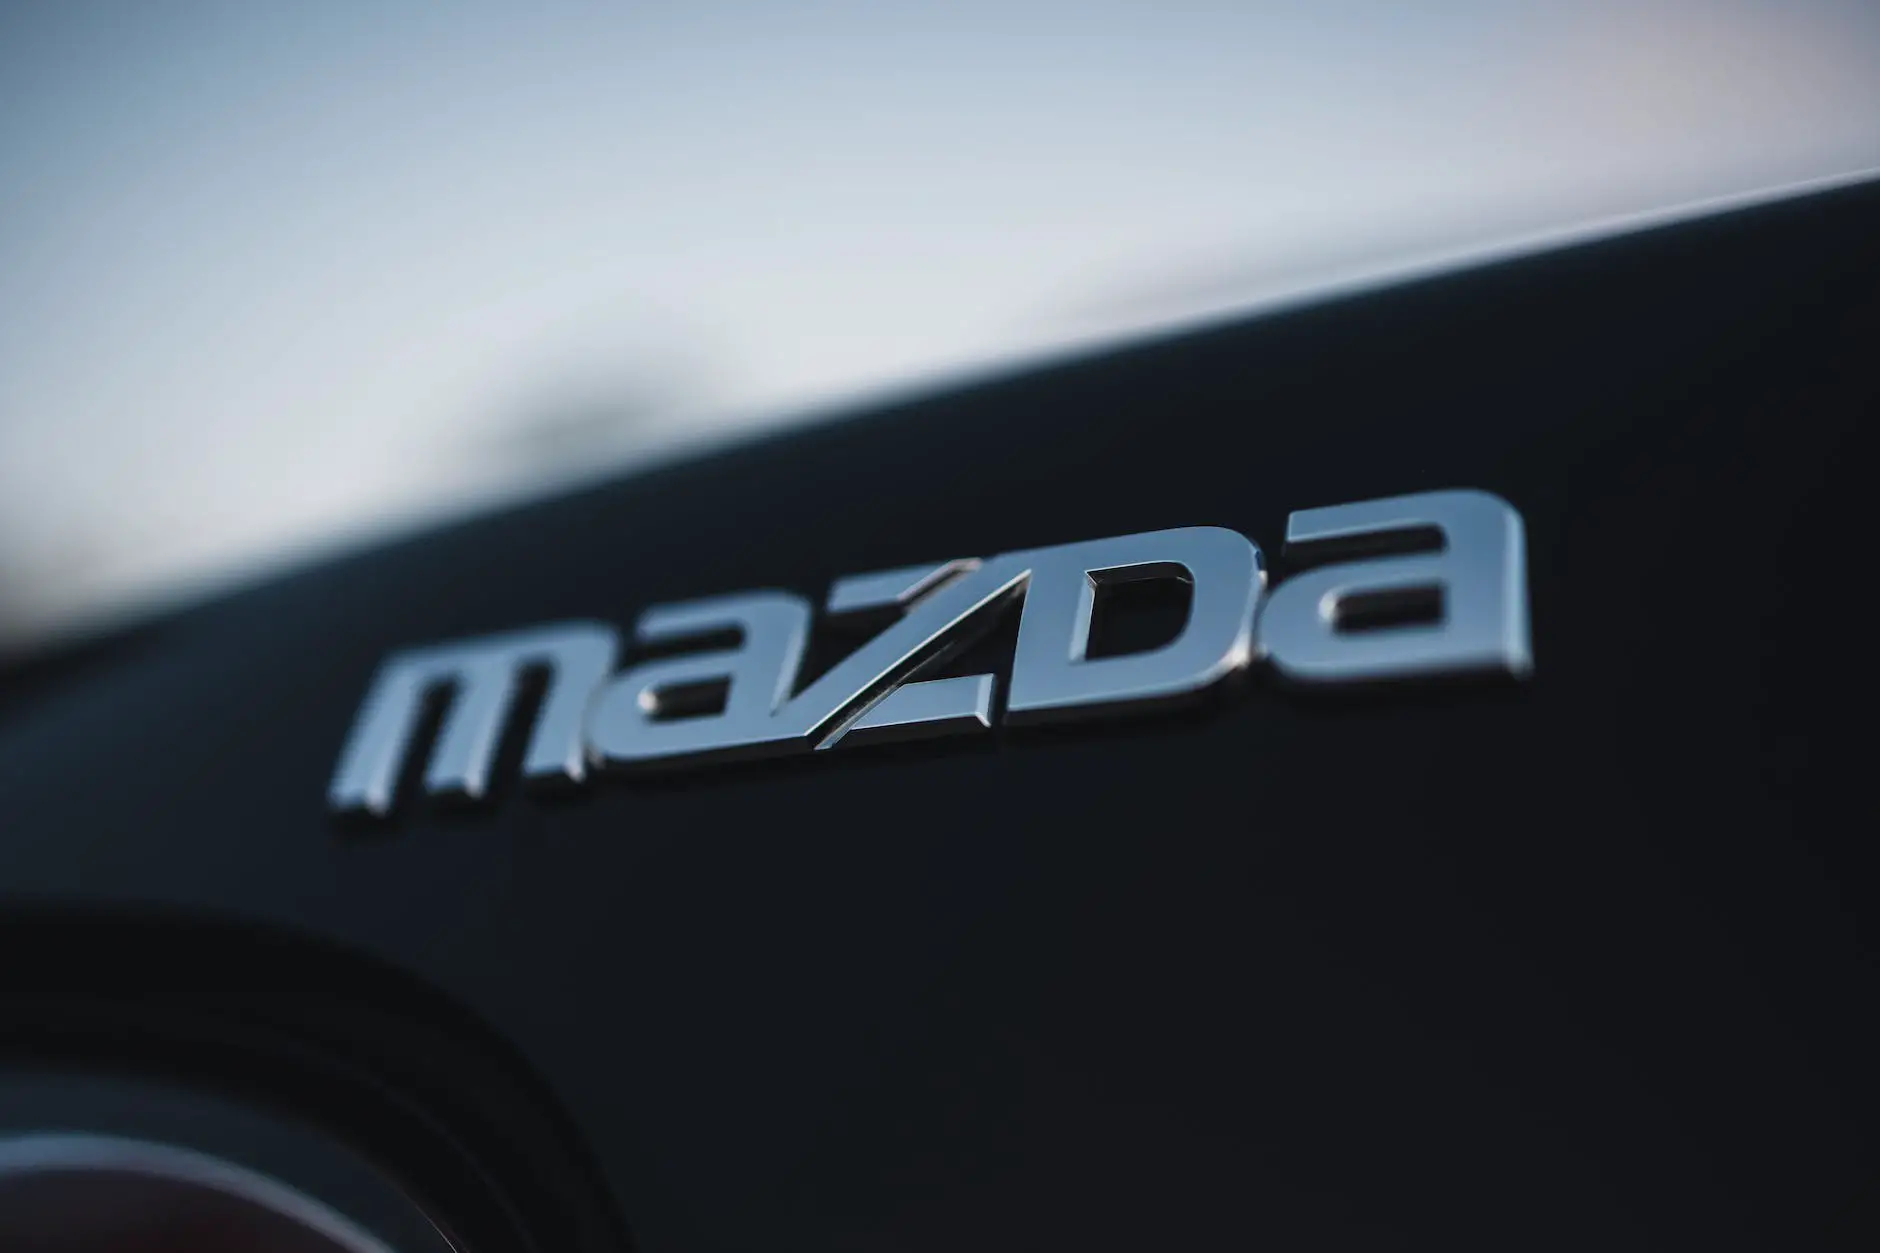 Mazda CX-5 interior features